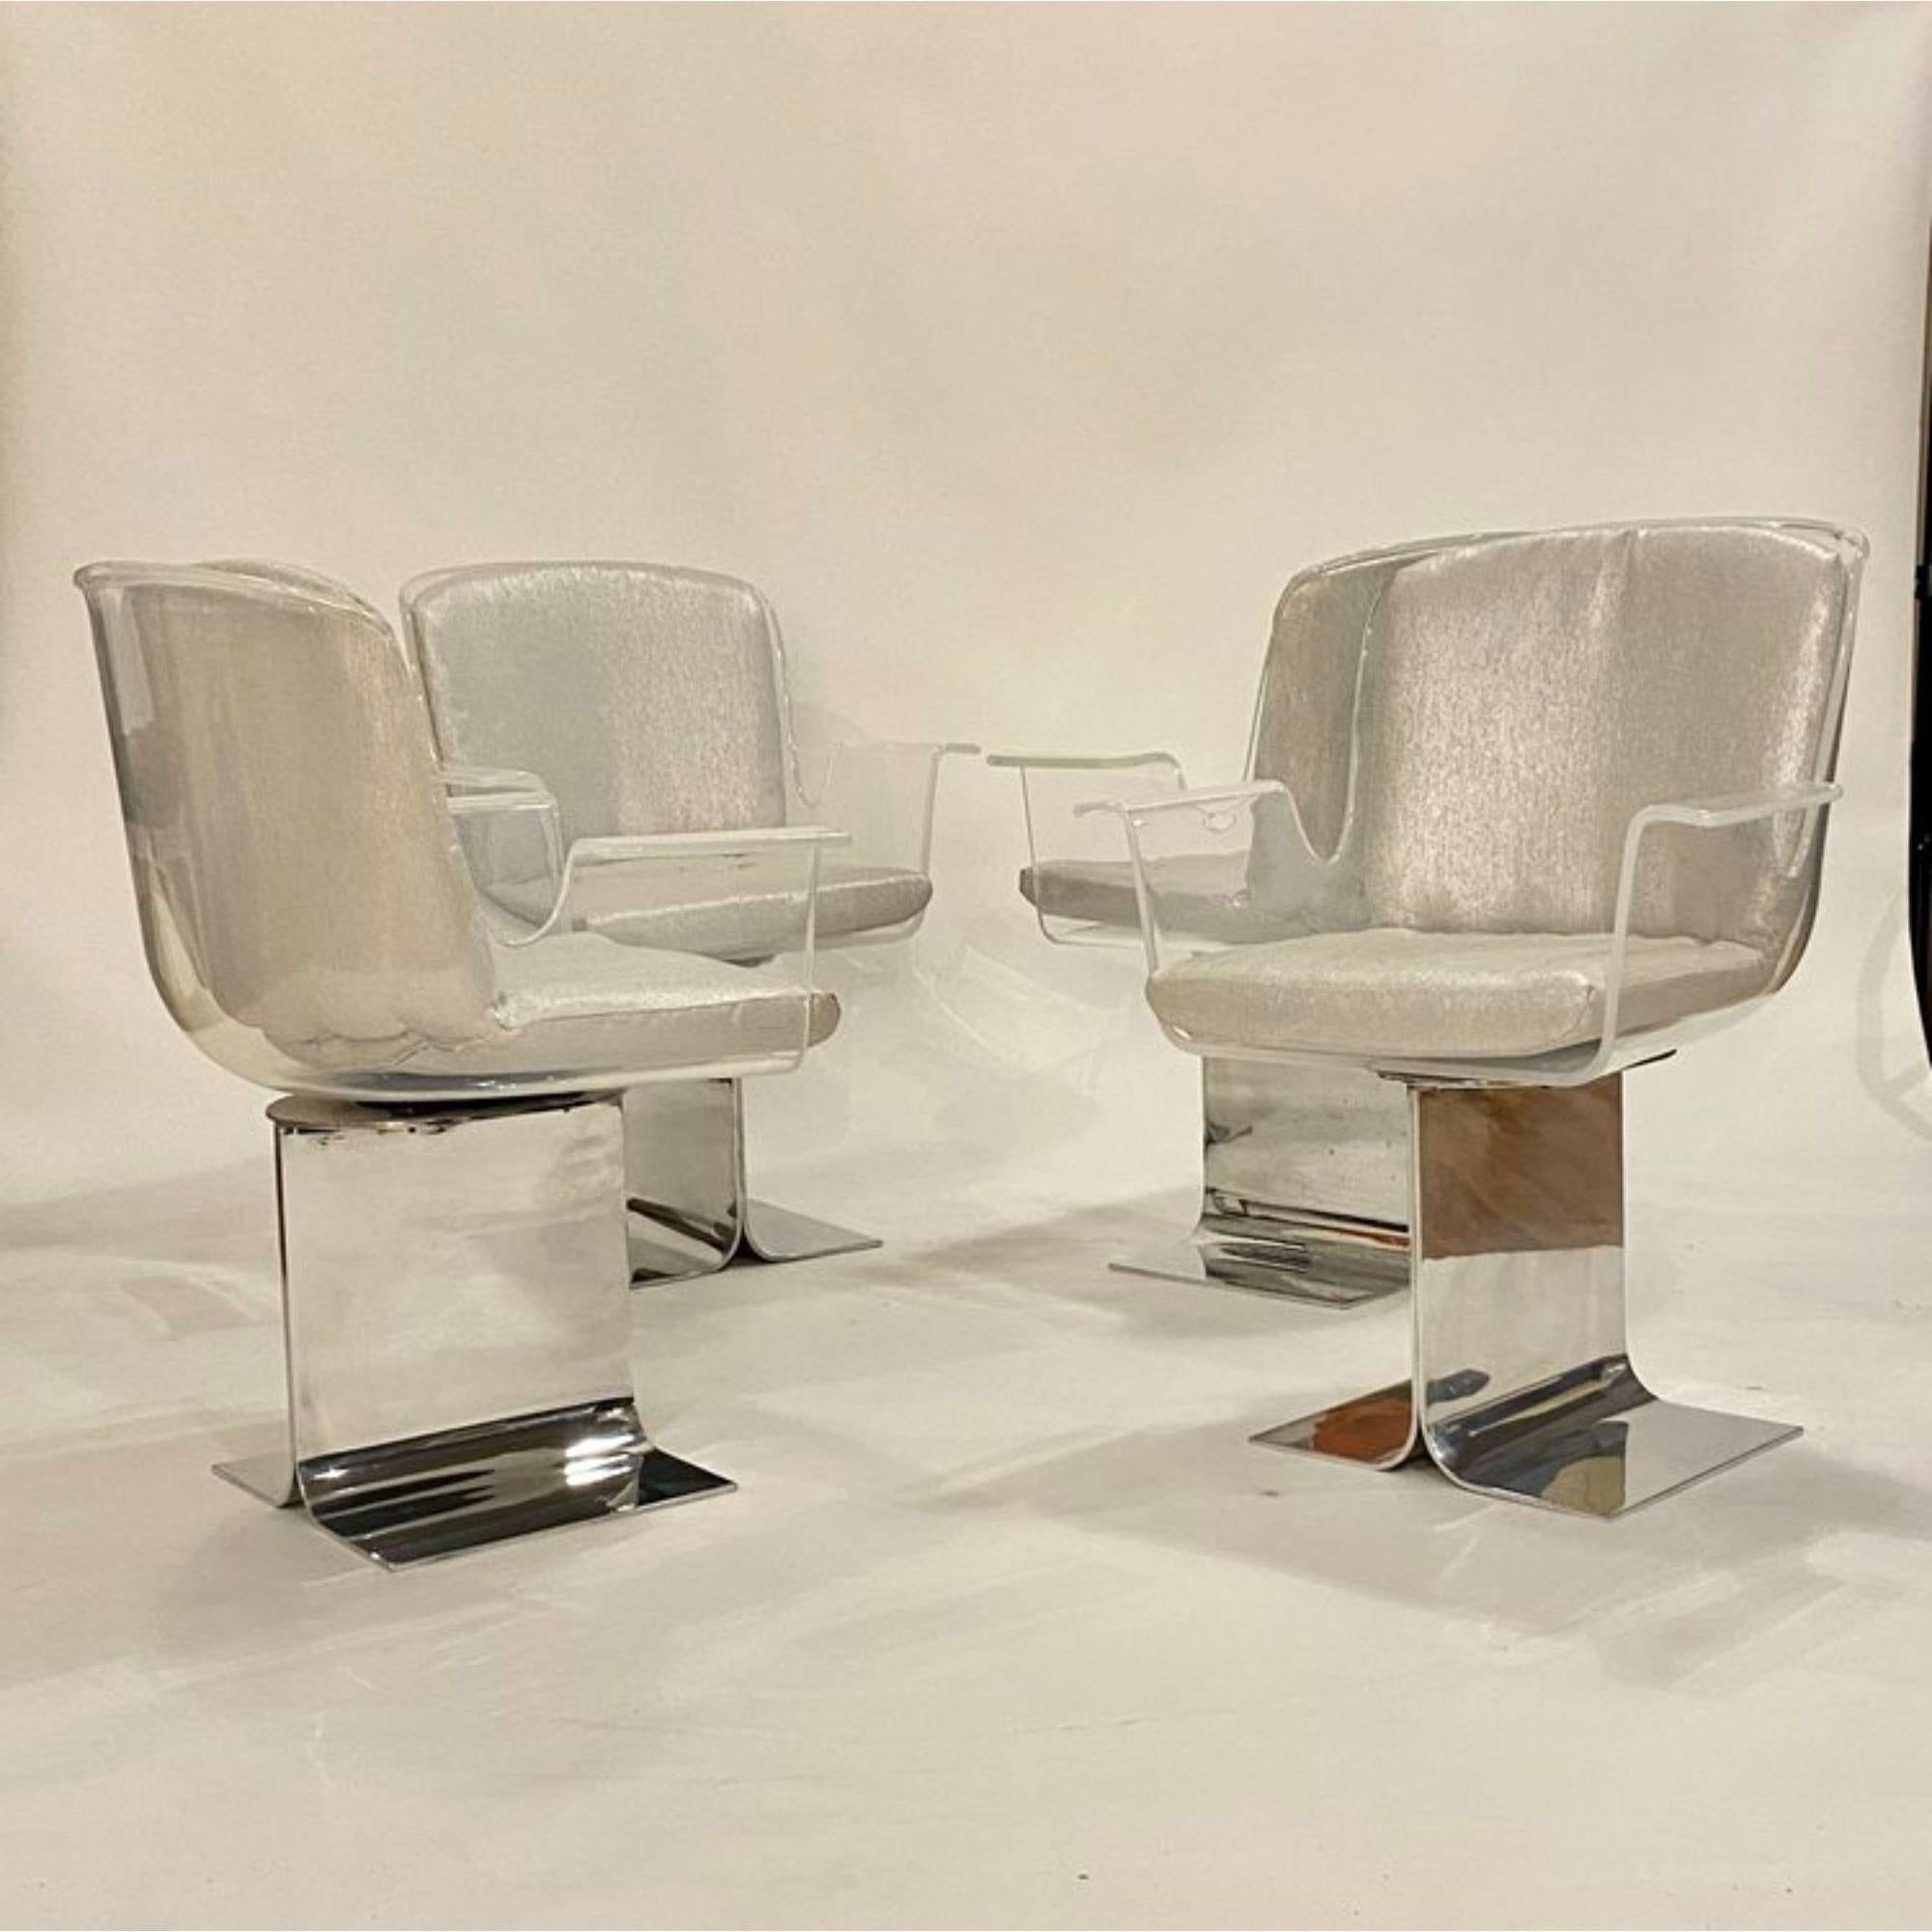 Ensemble de quatre fauteuils pivotants en Lucite de la collection Pace sur des bases de poutres en I en chrome poli, conçus par Leon Rosen. Coussins nouvellement rembourrés dans un tissu platine texturé.

Informations supplémentaires :
Matériaux